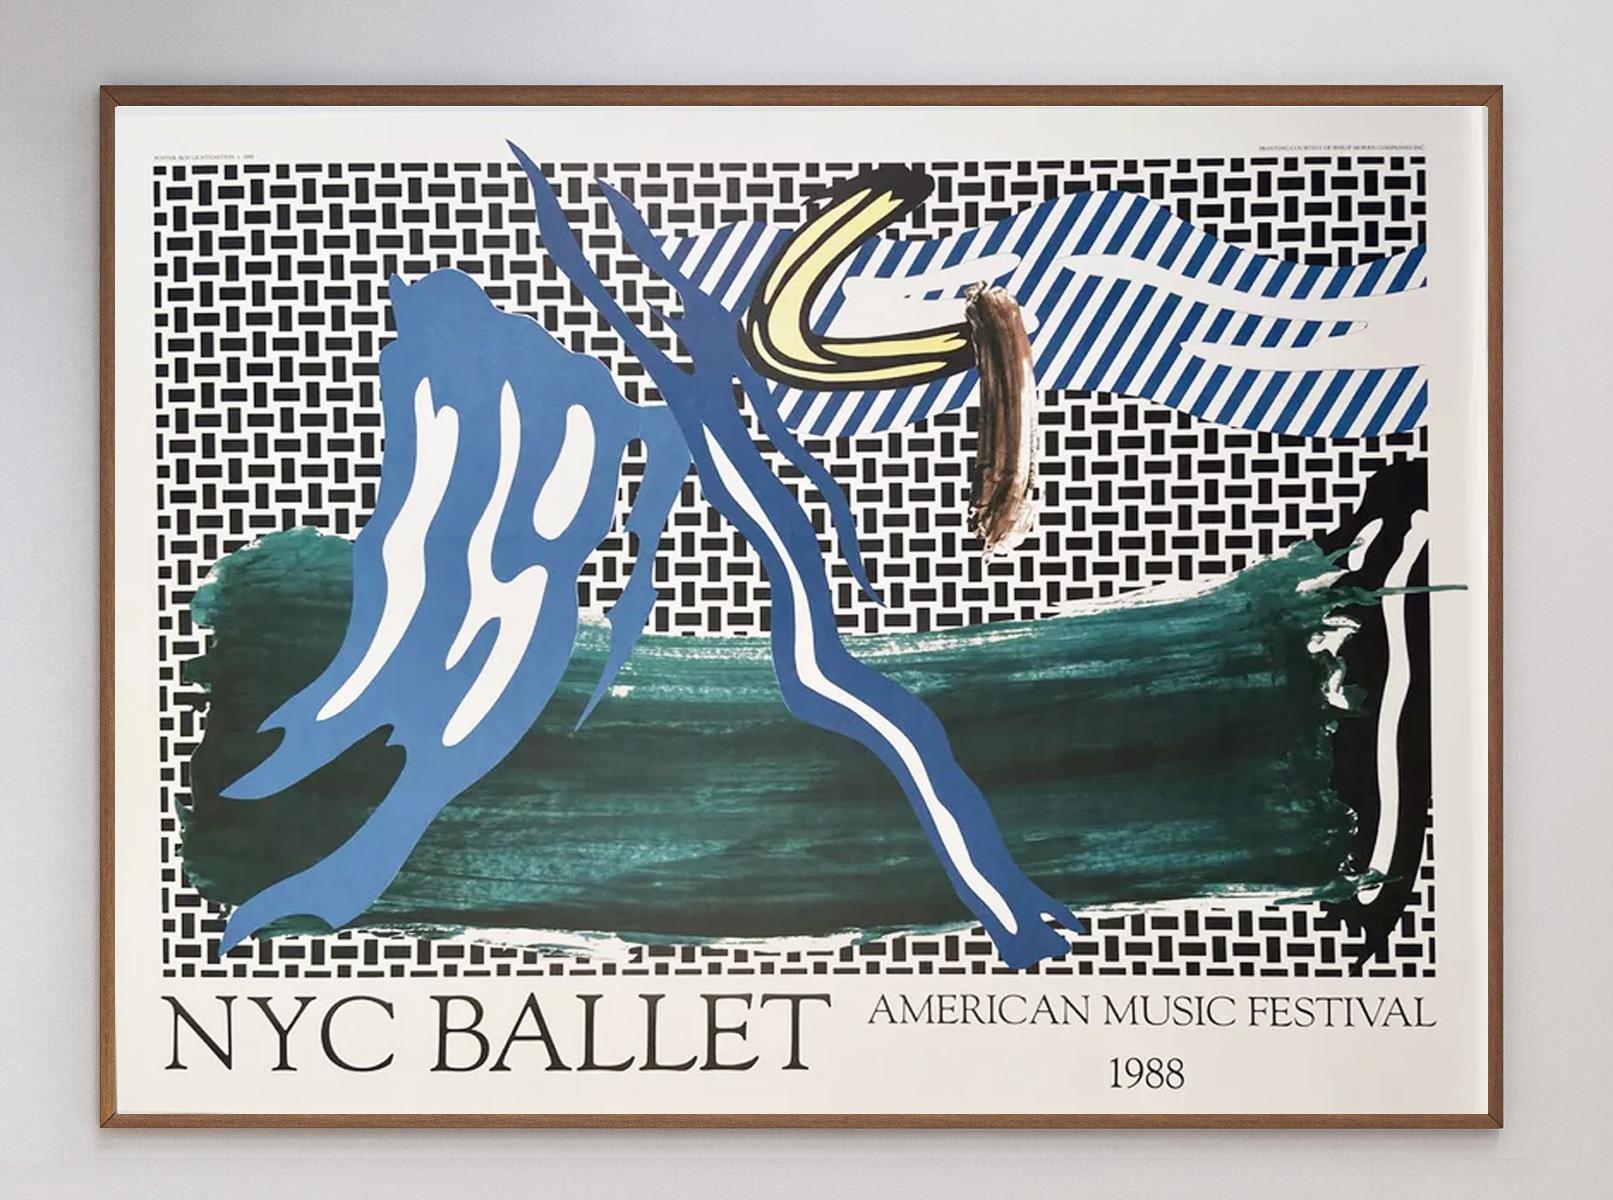 Dieses atemberaubende, seltene Design wurde 1988 für das American Music Festival anlässlich des 40-jährigen Bestehens des New York City Ballet entworfen. Mit seinen typisch kräftigen Farben und dicken Linien ist es ein hervorragendes Stück Pop-Art-